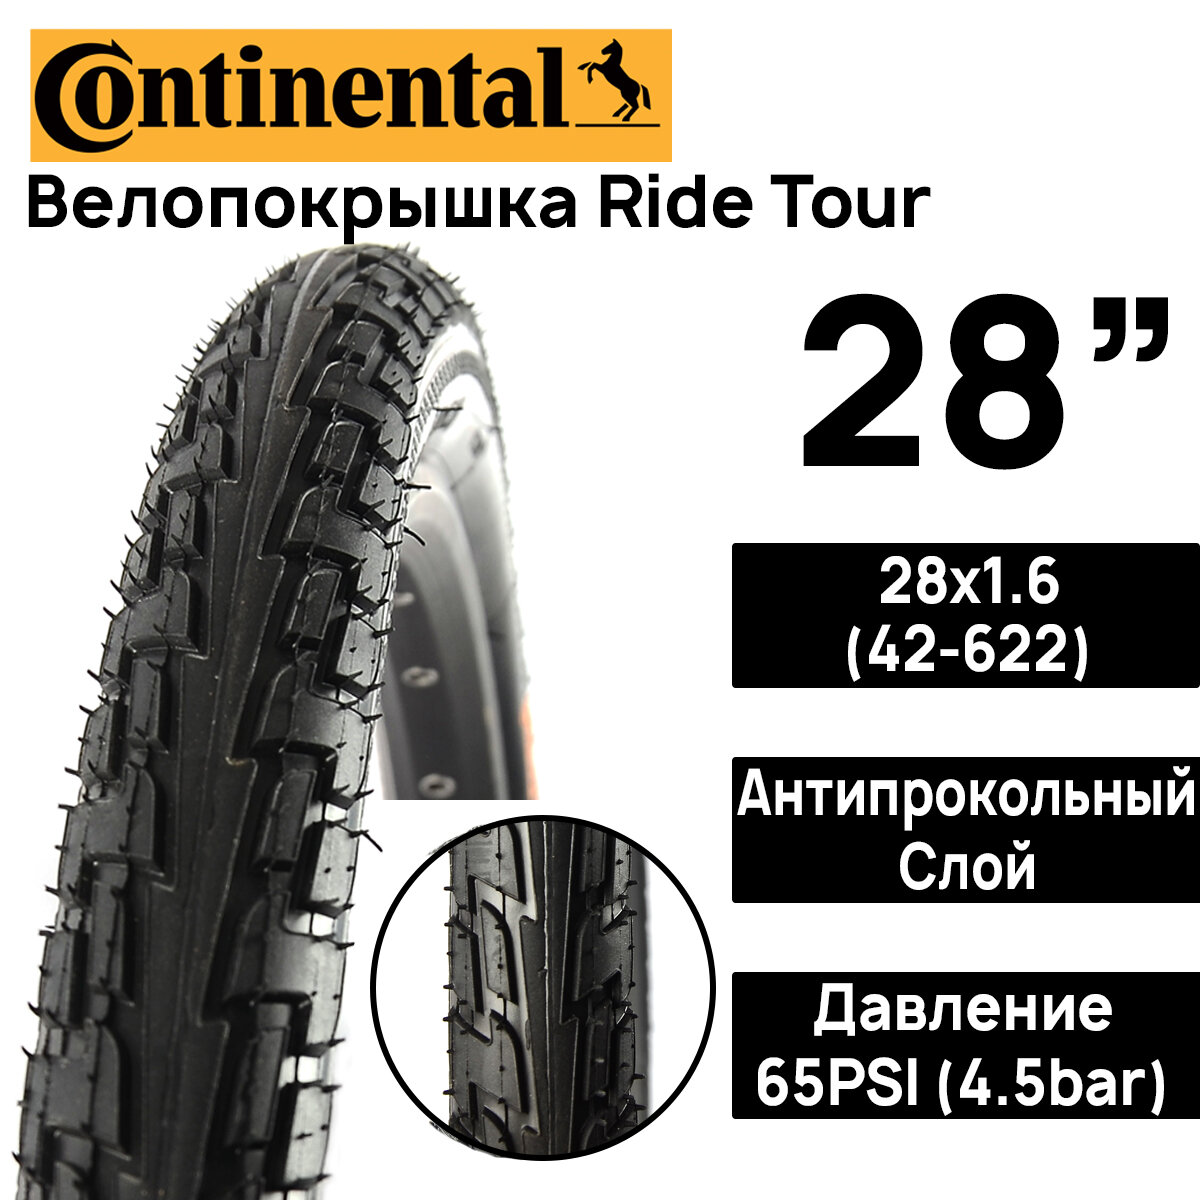 Покрышка для велосипеда Continental Ride Tour 28"x1.6 (42-622), MAX BAR 4.5, PSI 65, жесткий корд, антипрокольный слой, черная